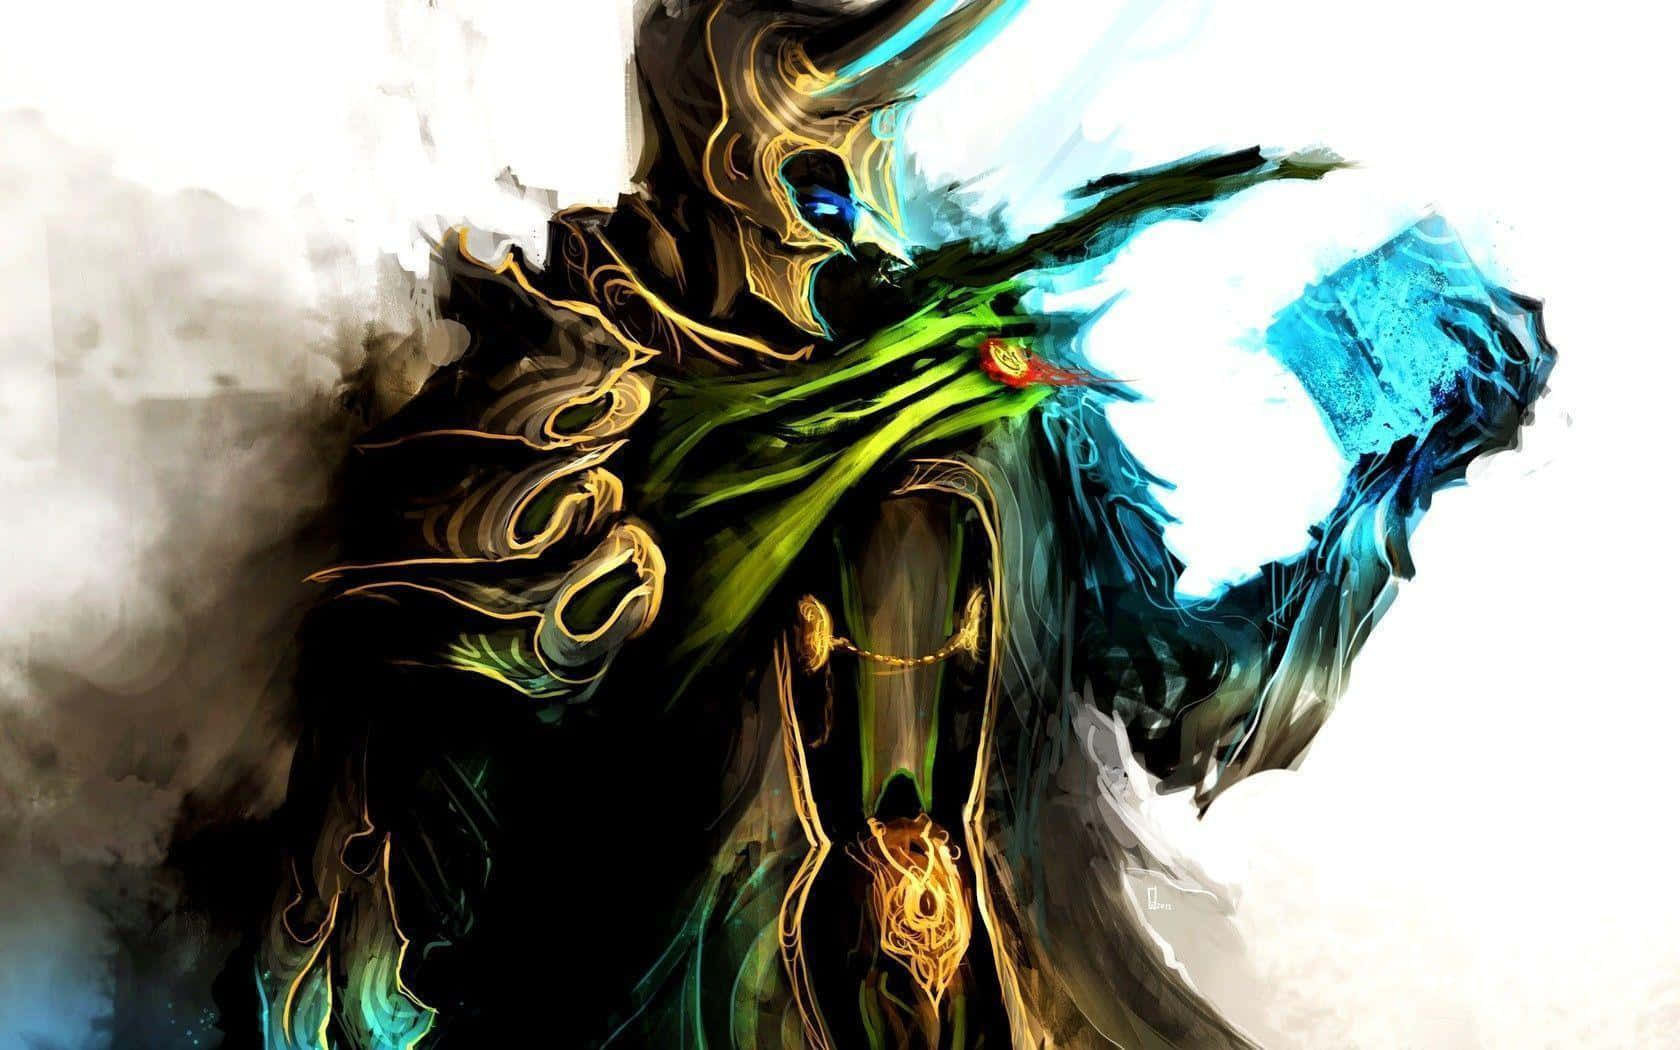 Elhijo Adoptado De Odin, Loki, En La Clásica Historia De Cómic De Marvel. Fondo de pantalla